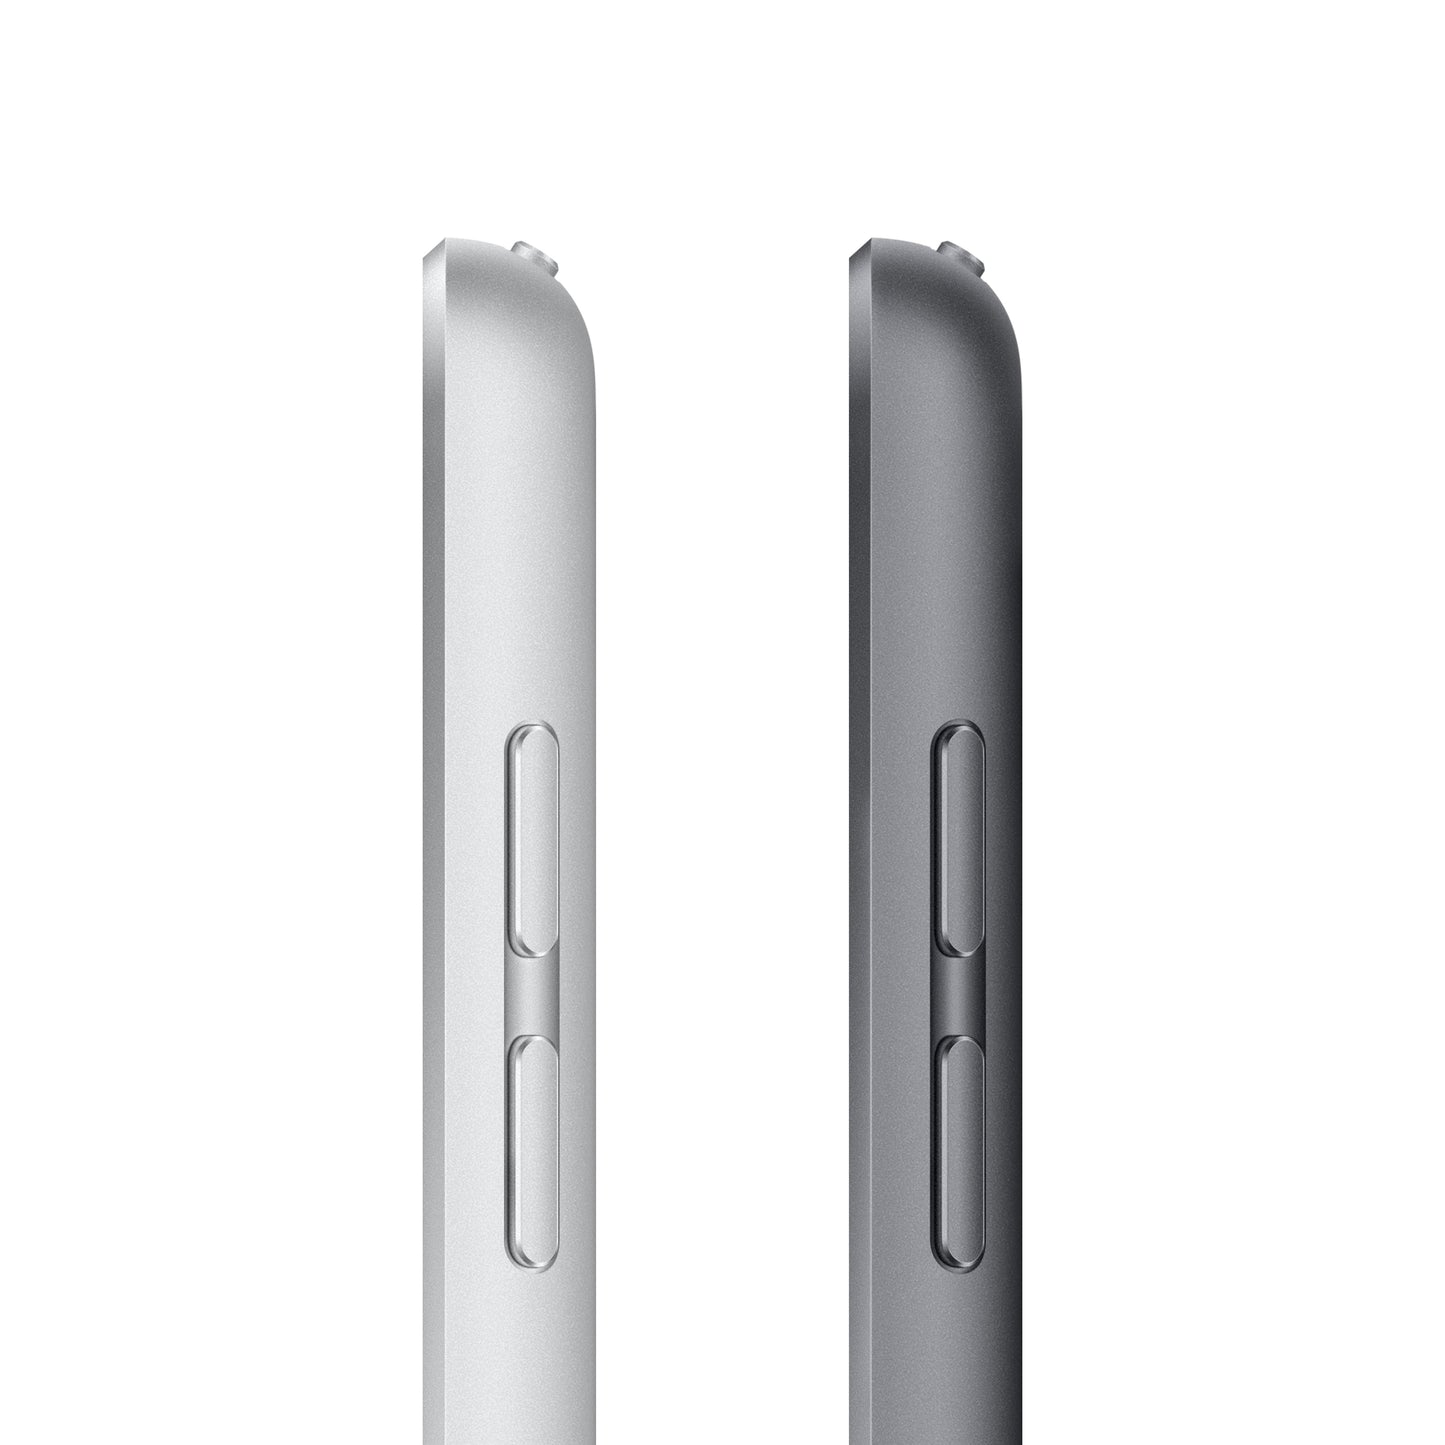 2021 iPad 10,2 pouces, Wi-Fi, 64 Go, Gris sidéral (9e génération)